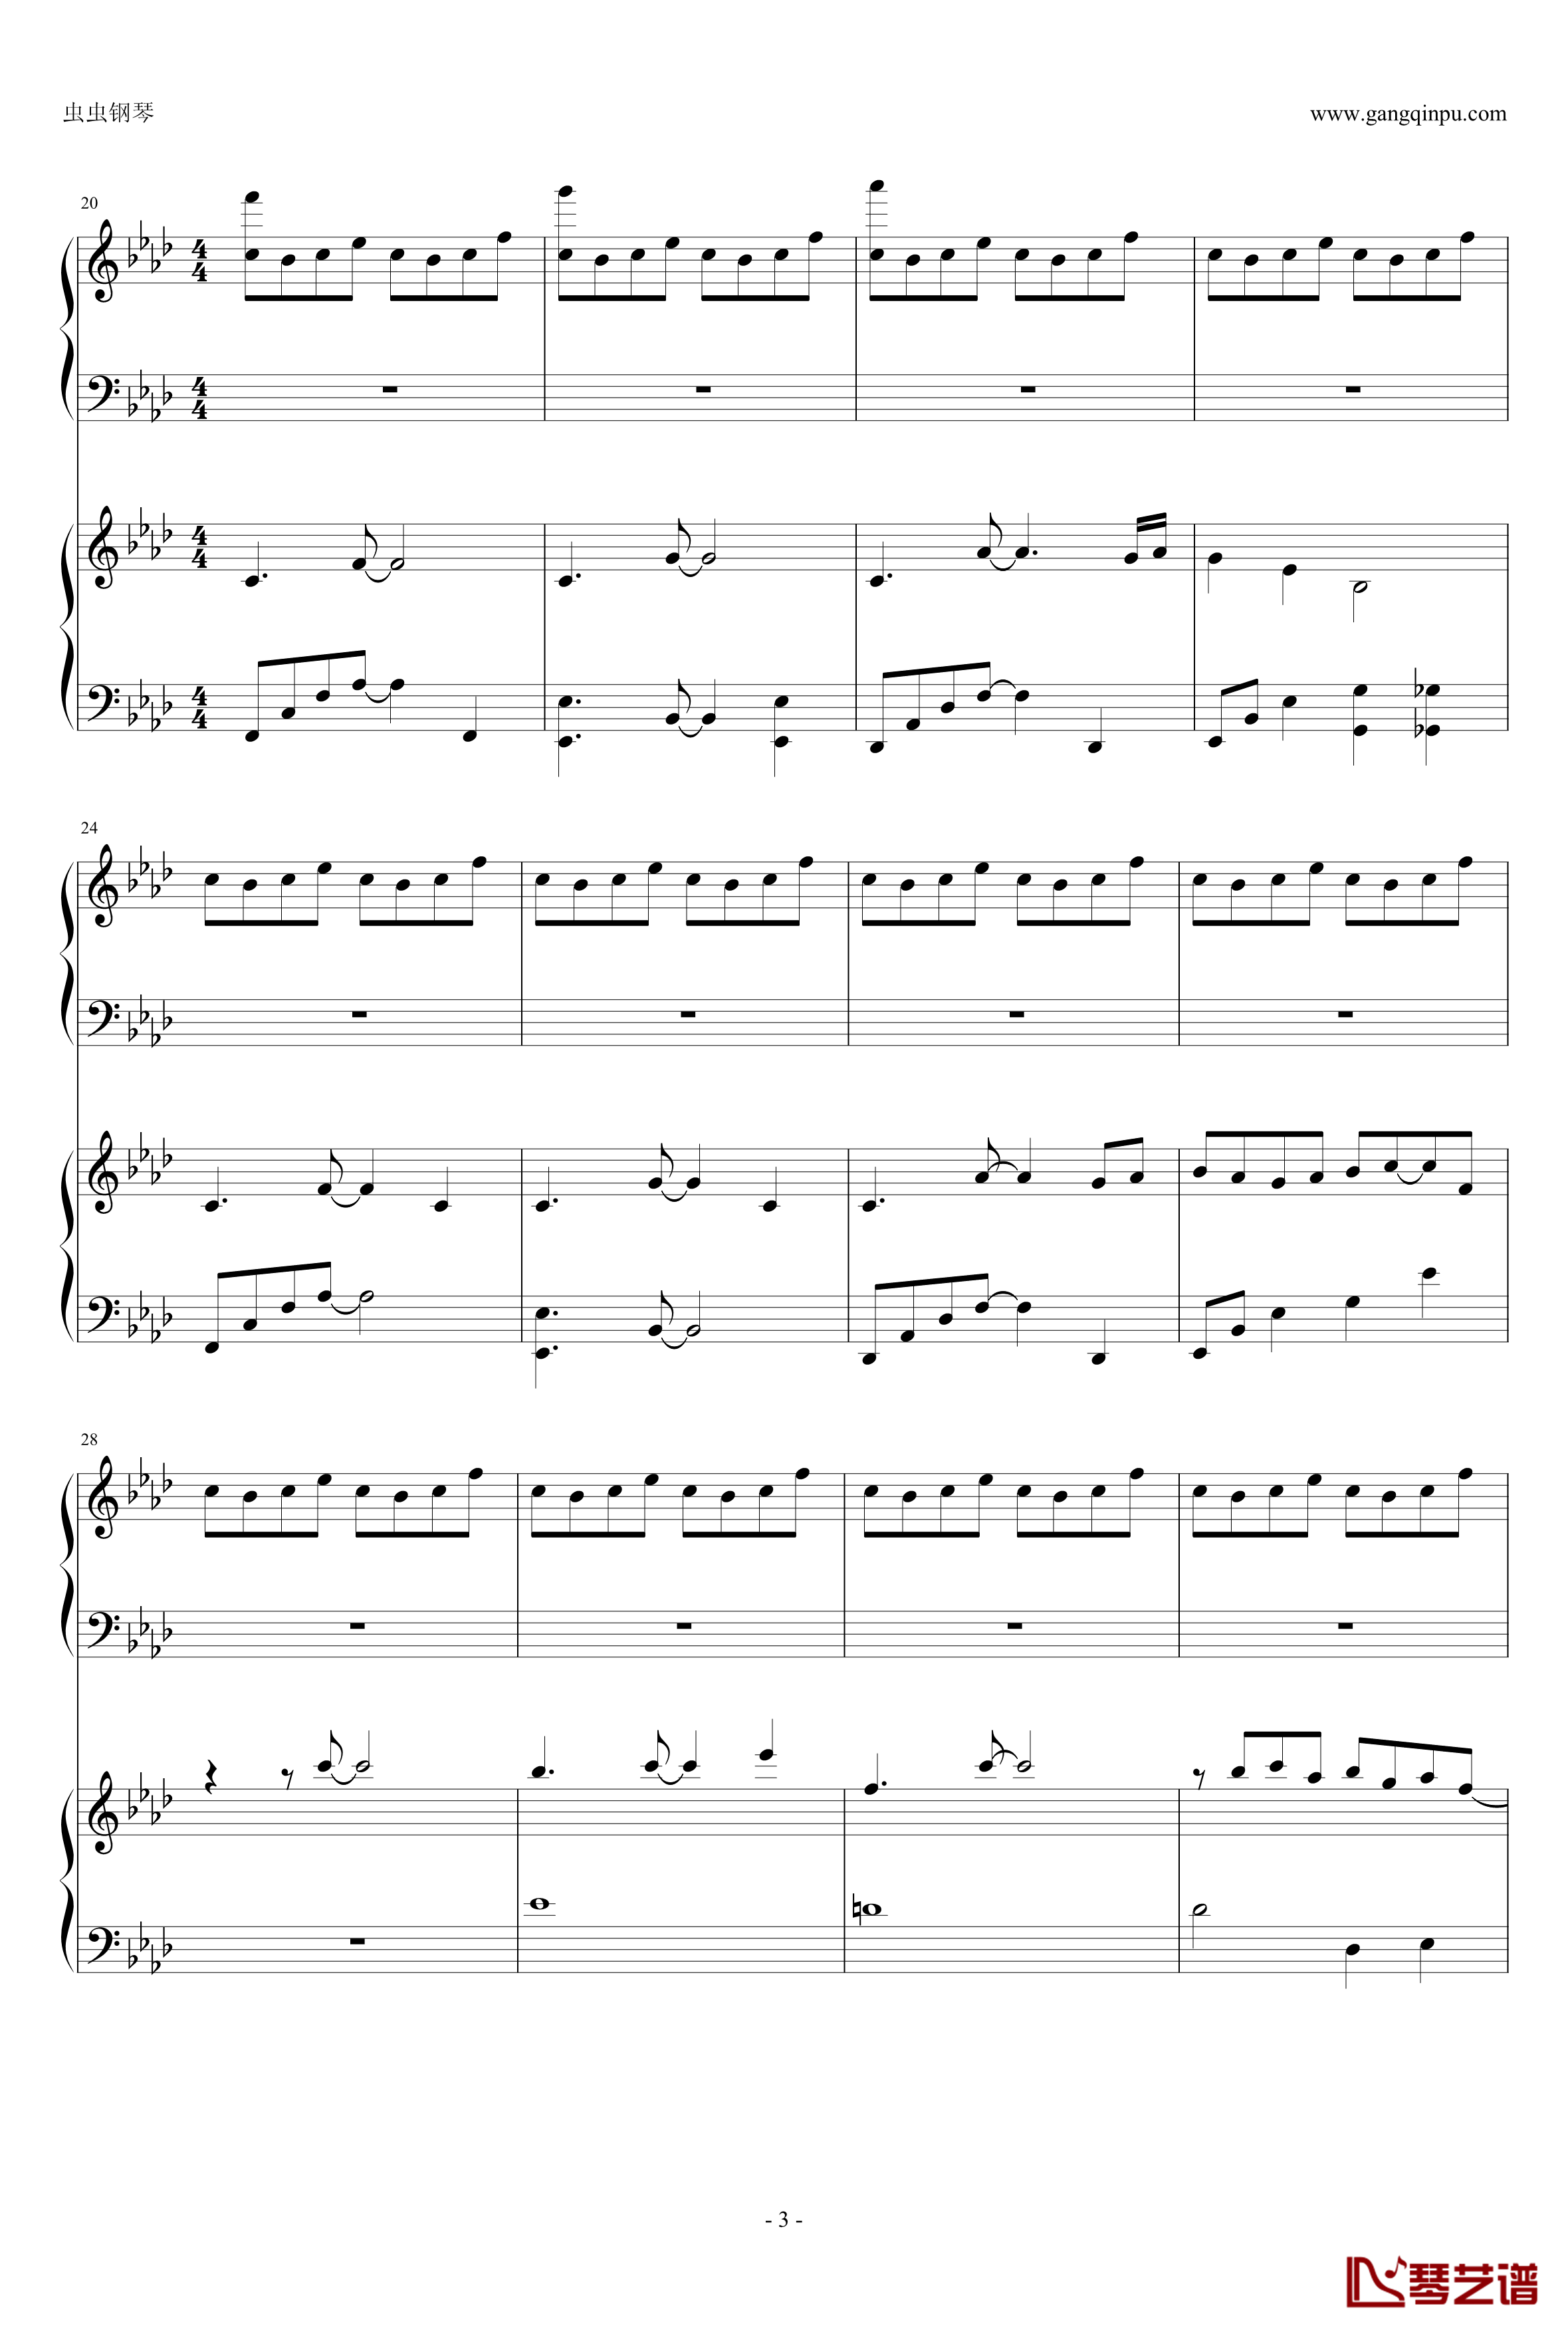 東方連奏曲II Pianoforte钢琴谱-第一部分-东方project